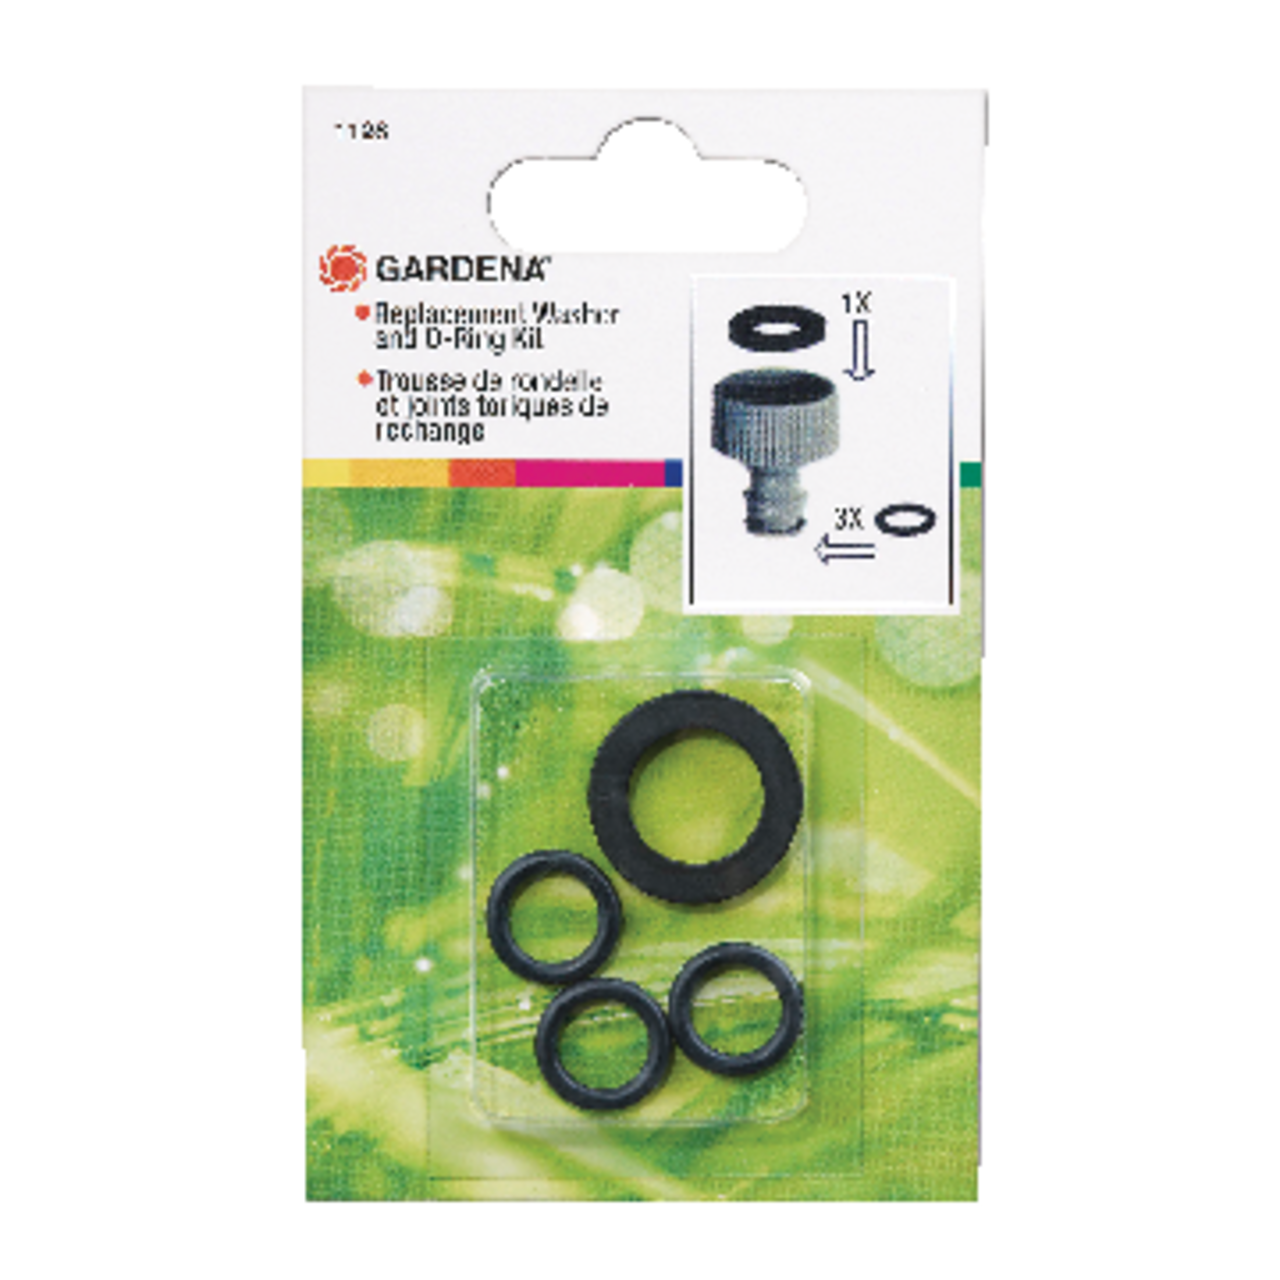 Gardena Replacement Garden Hose Washer & O-Ring Kit